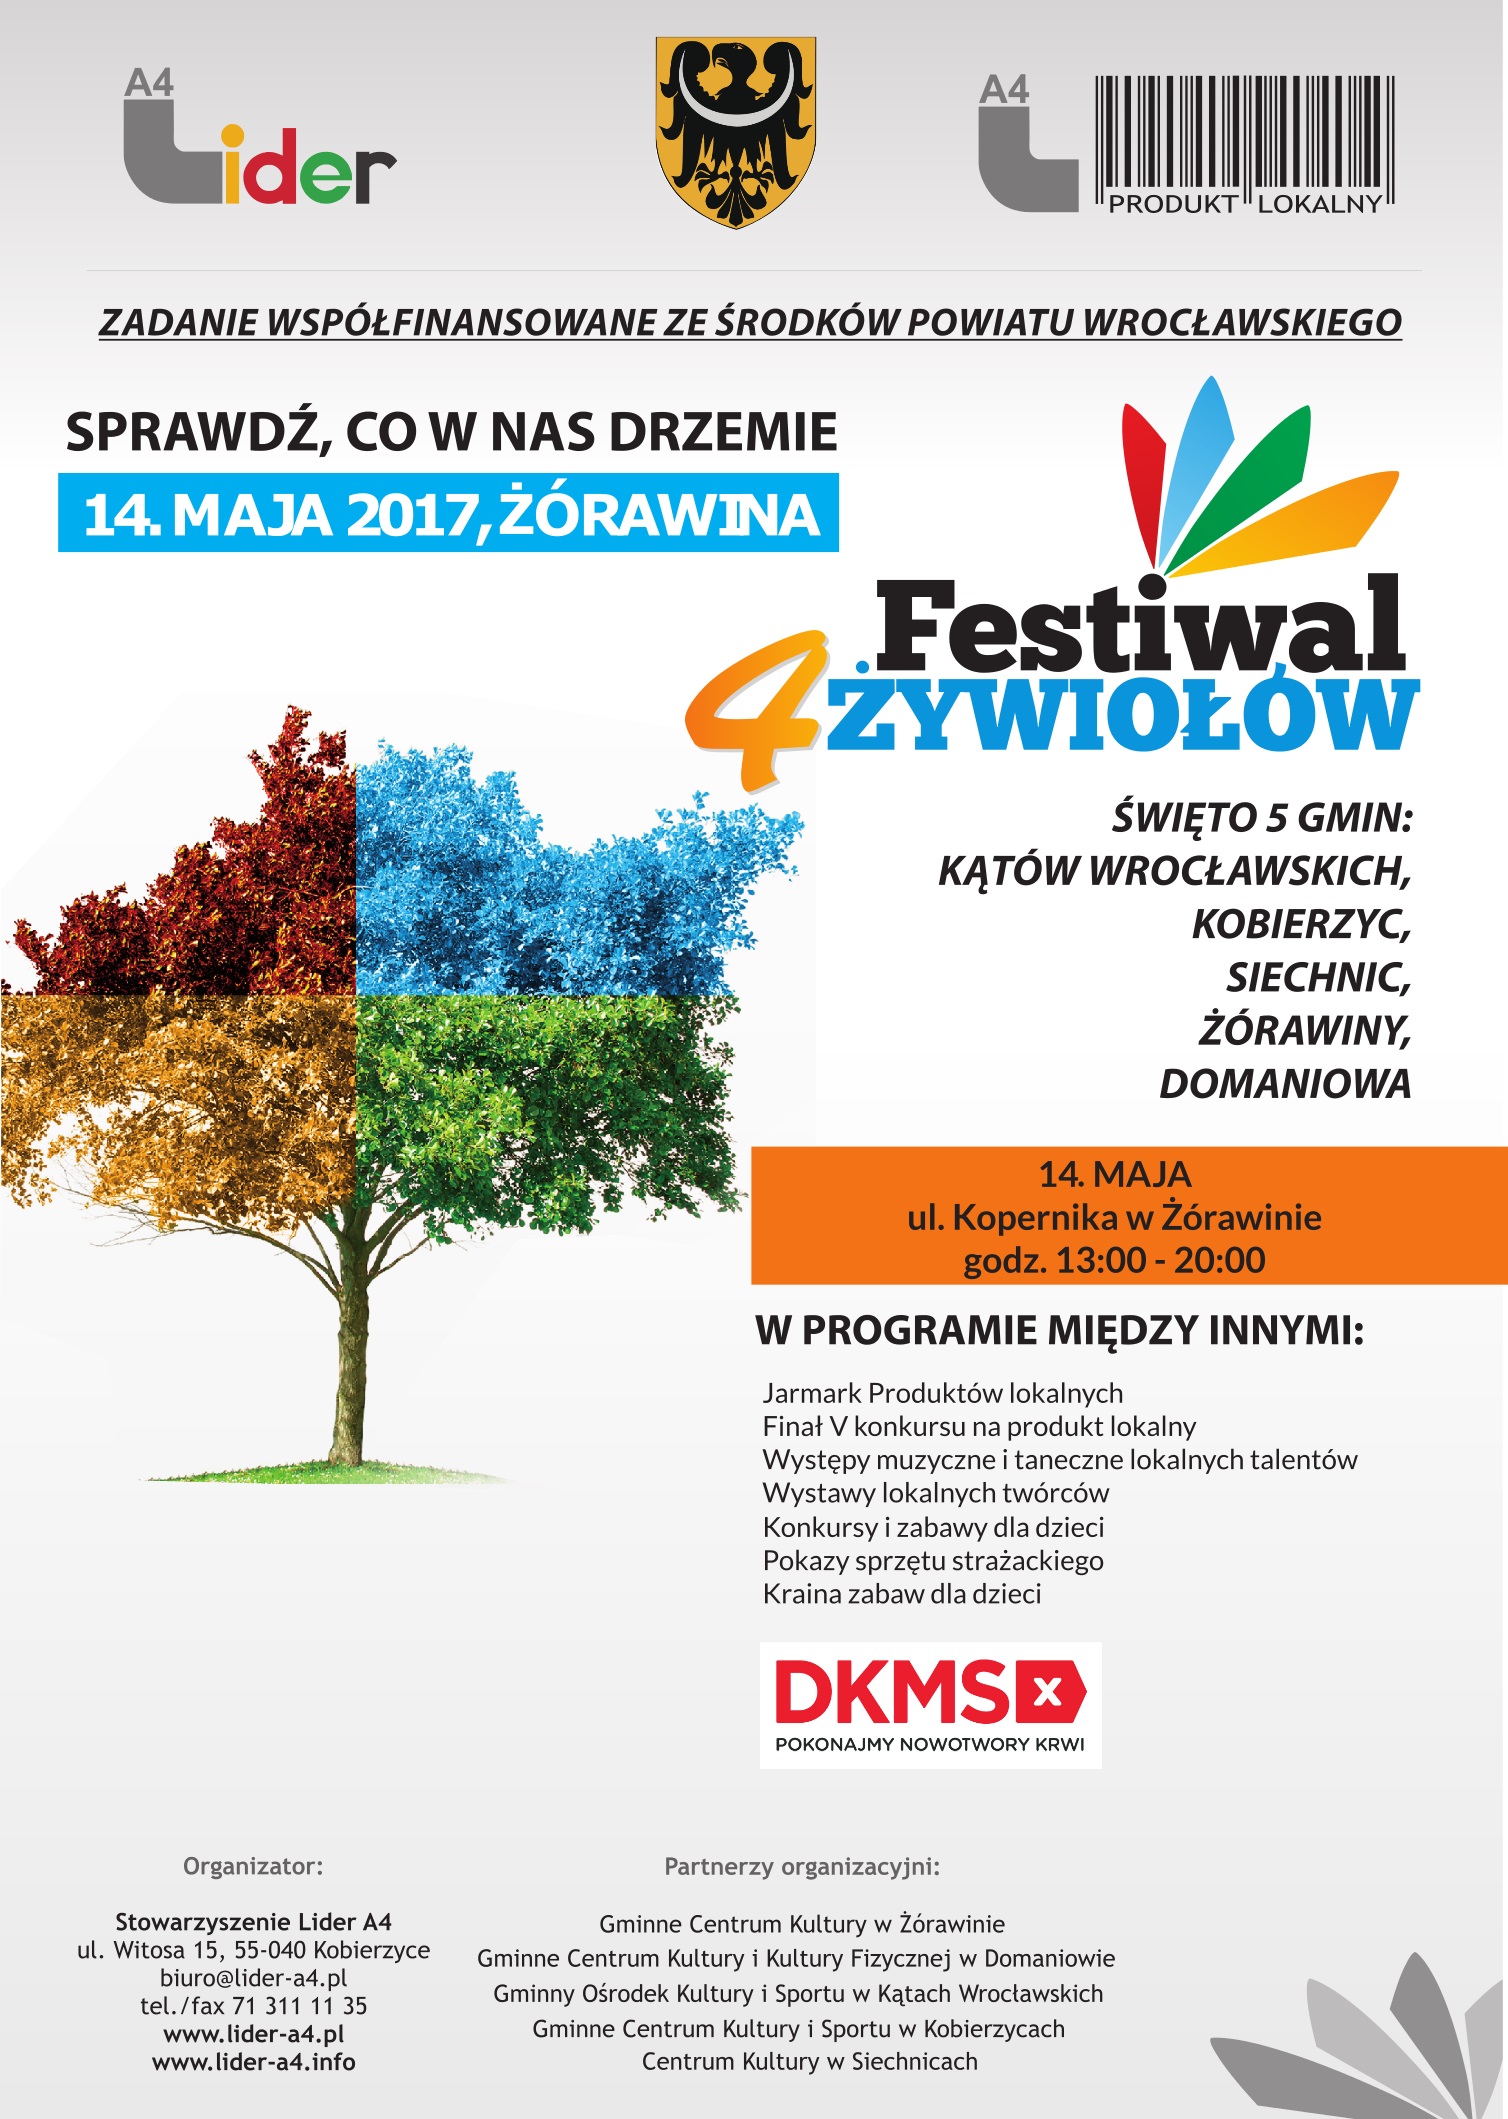 plakat przedstawia informacje dotyczące festiwalu, który odbędzie się w Żórawinie 14 maja